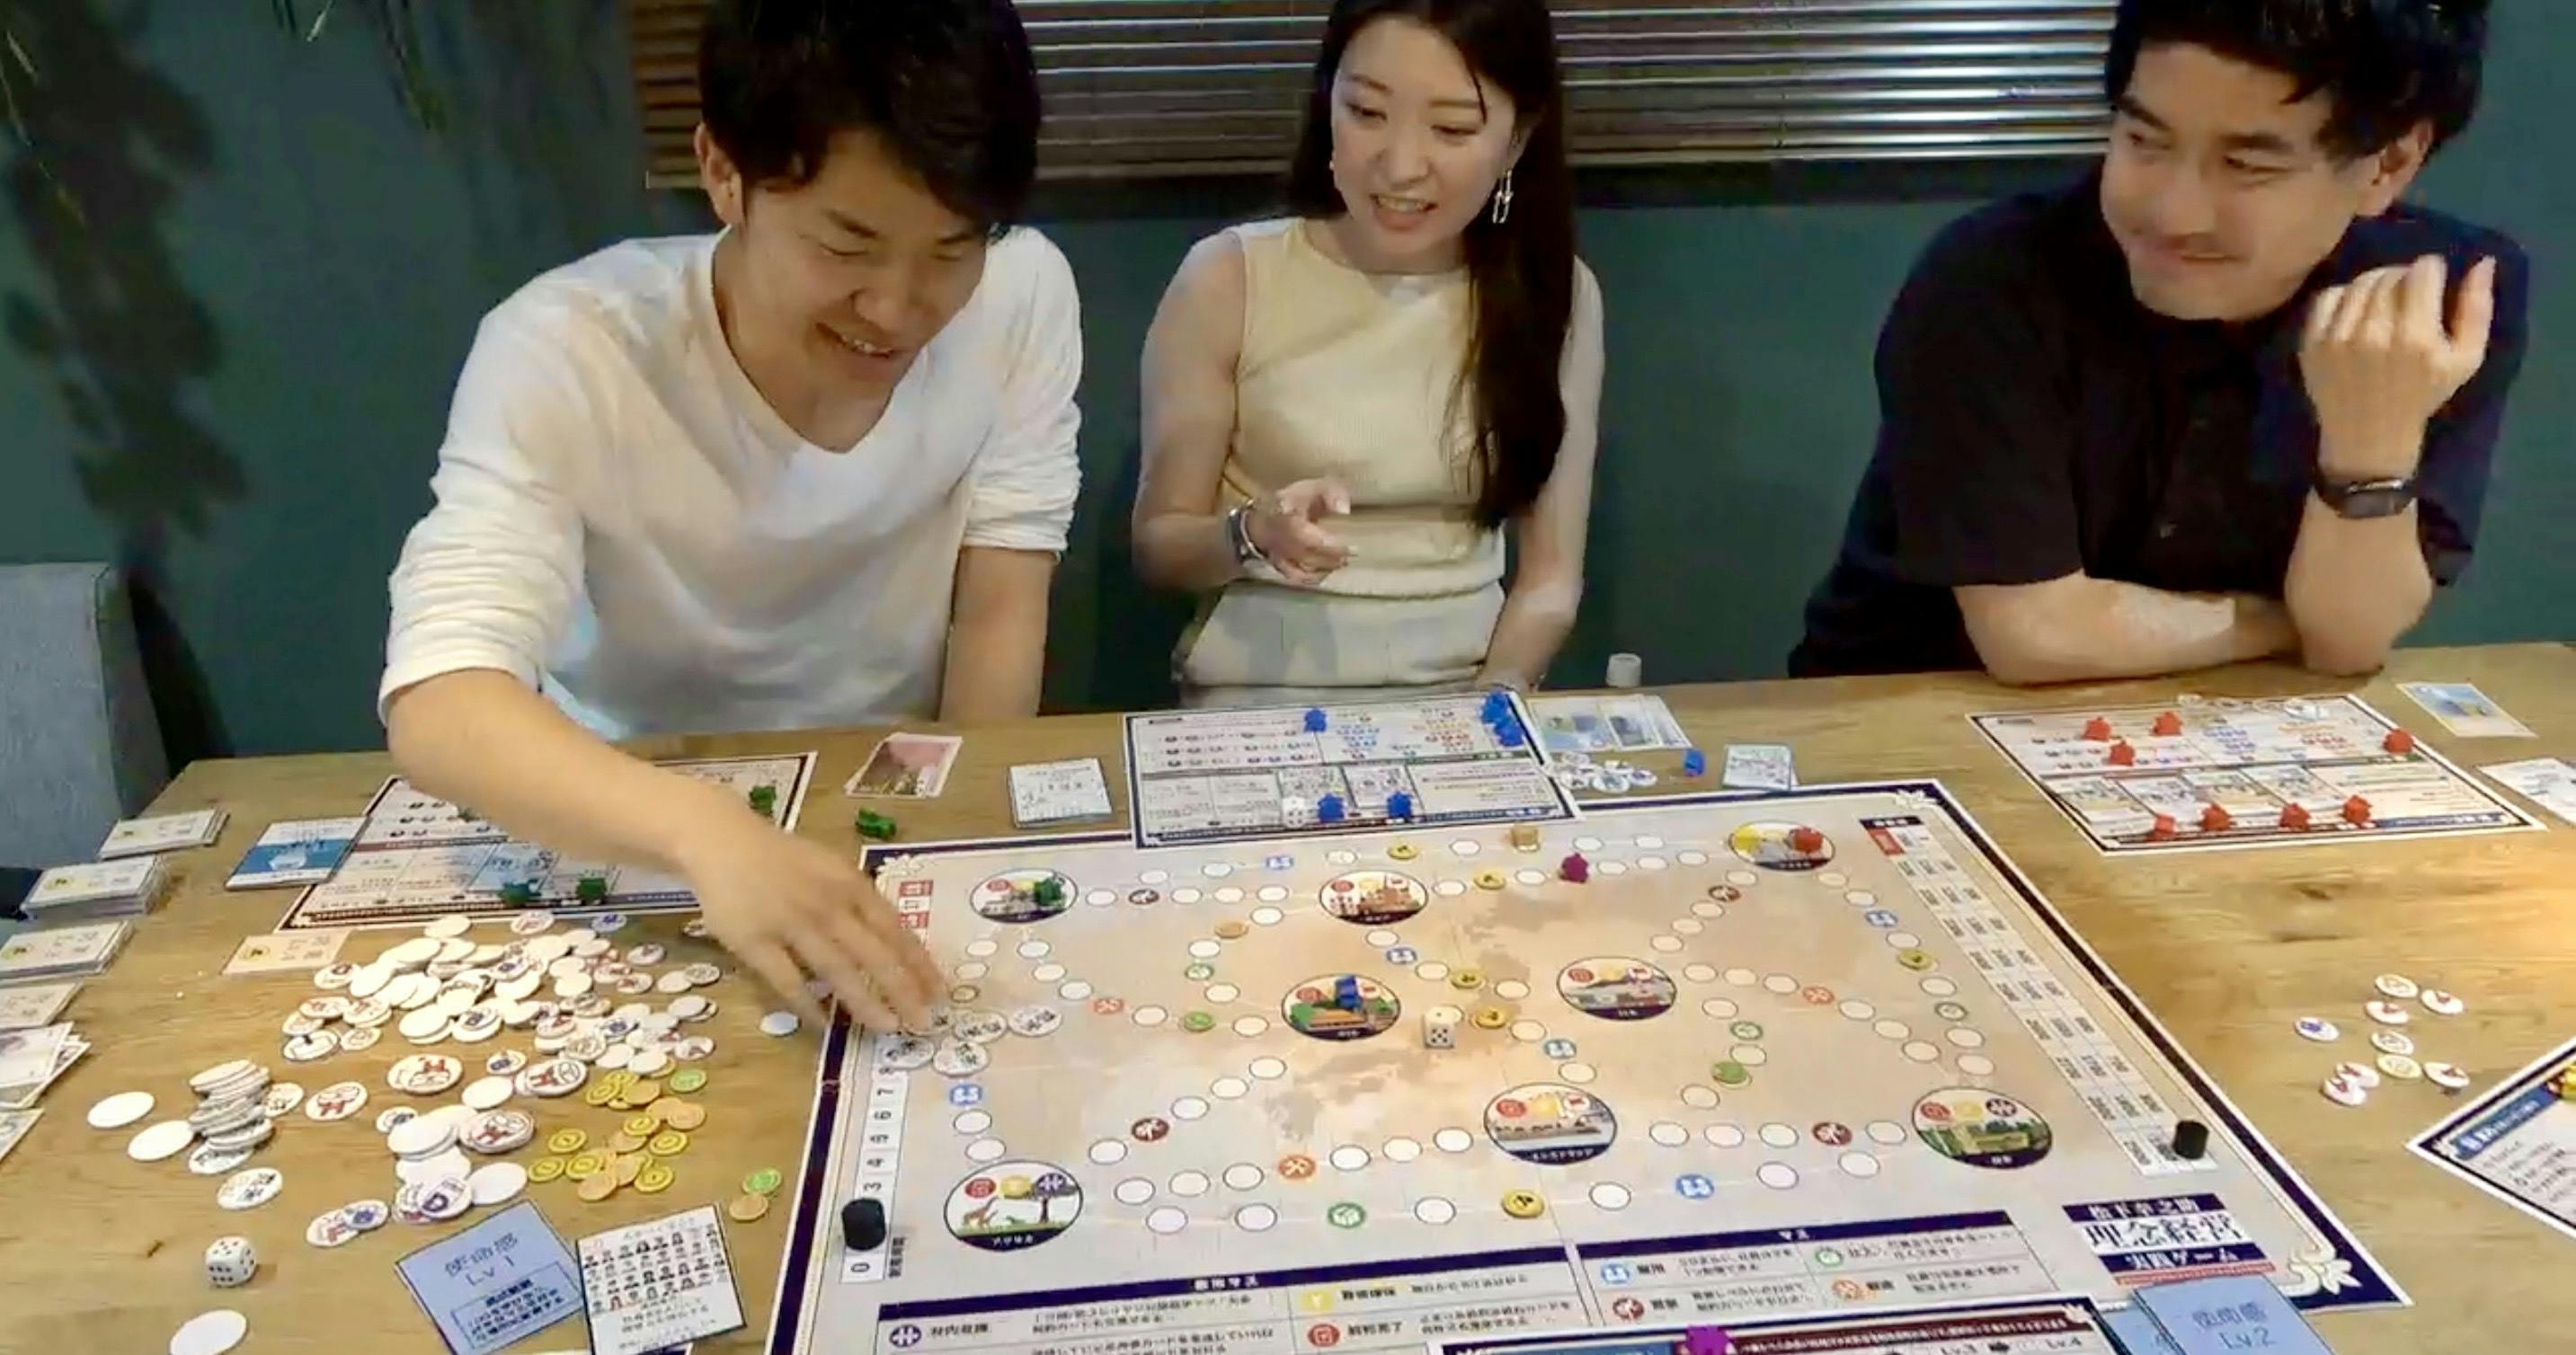 日本を代表する経営者「松下幸之助」の経営哲学を体験できるボードゲームを届けたい！